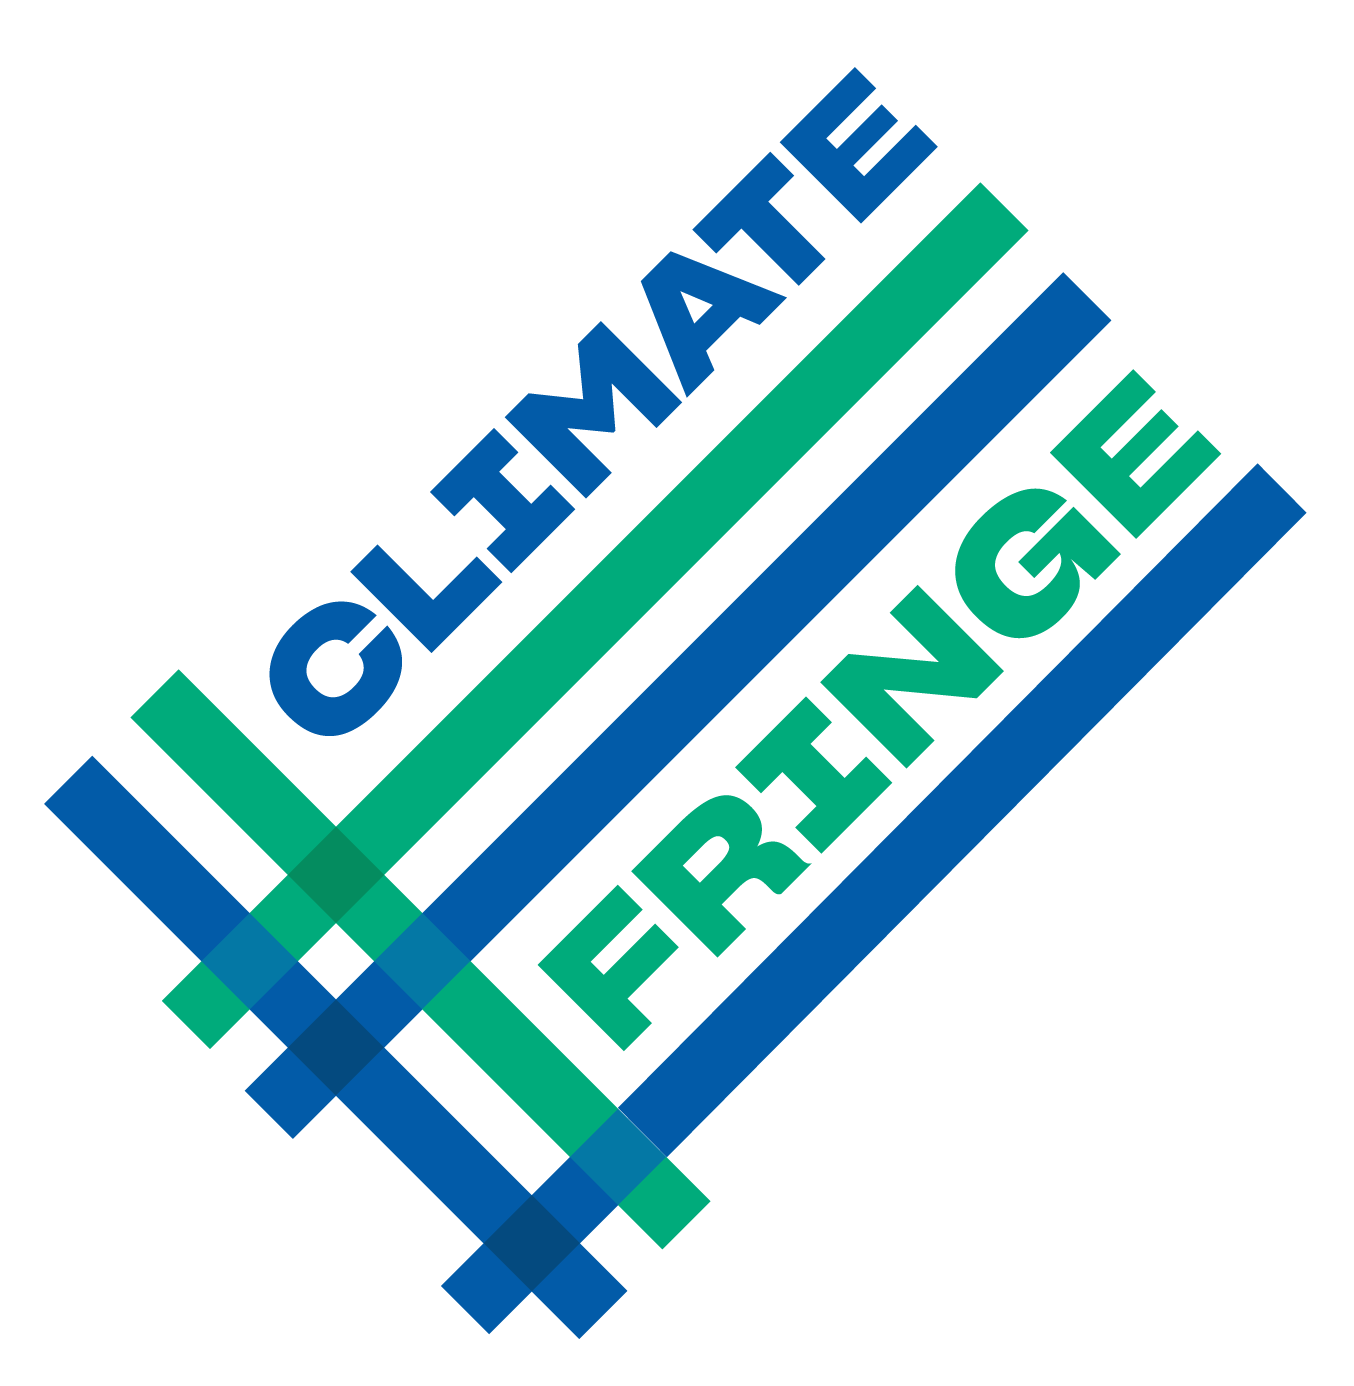 Climate Fringe Logo